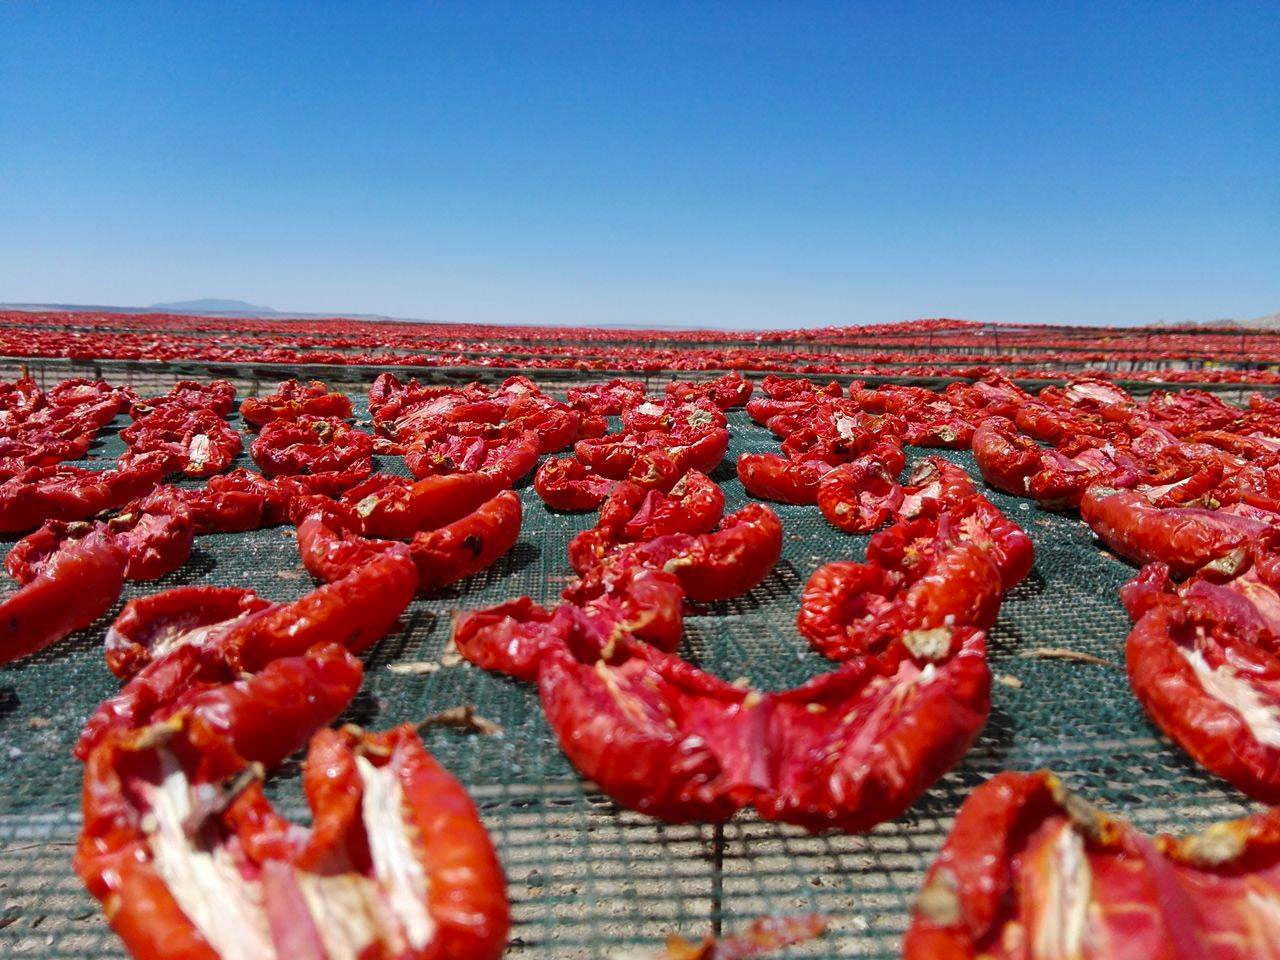 الطماطم التونسية المجفّفة : منتج للتثمين والدعم لتحسين ترويجه داخل تونس وخارجها